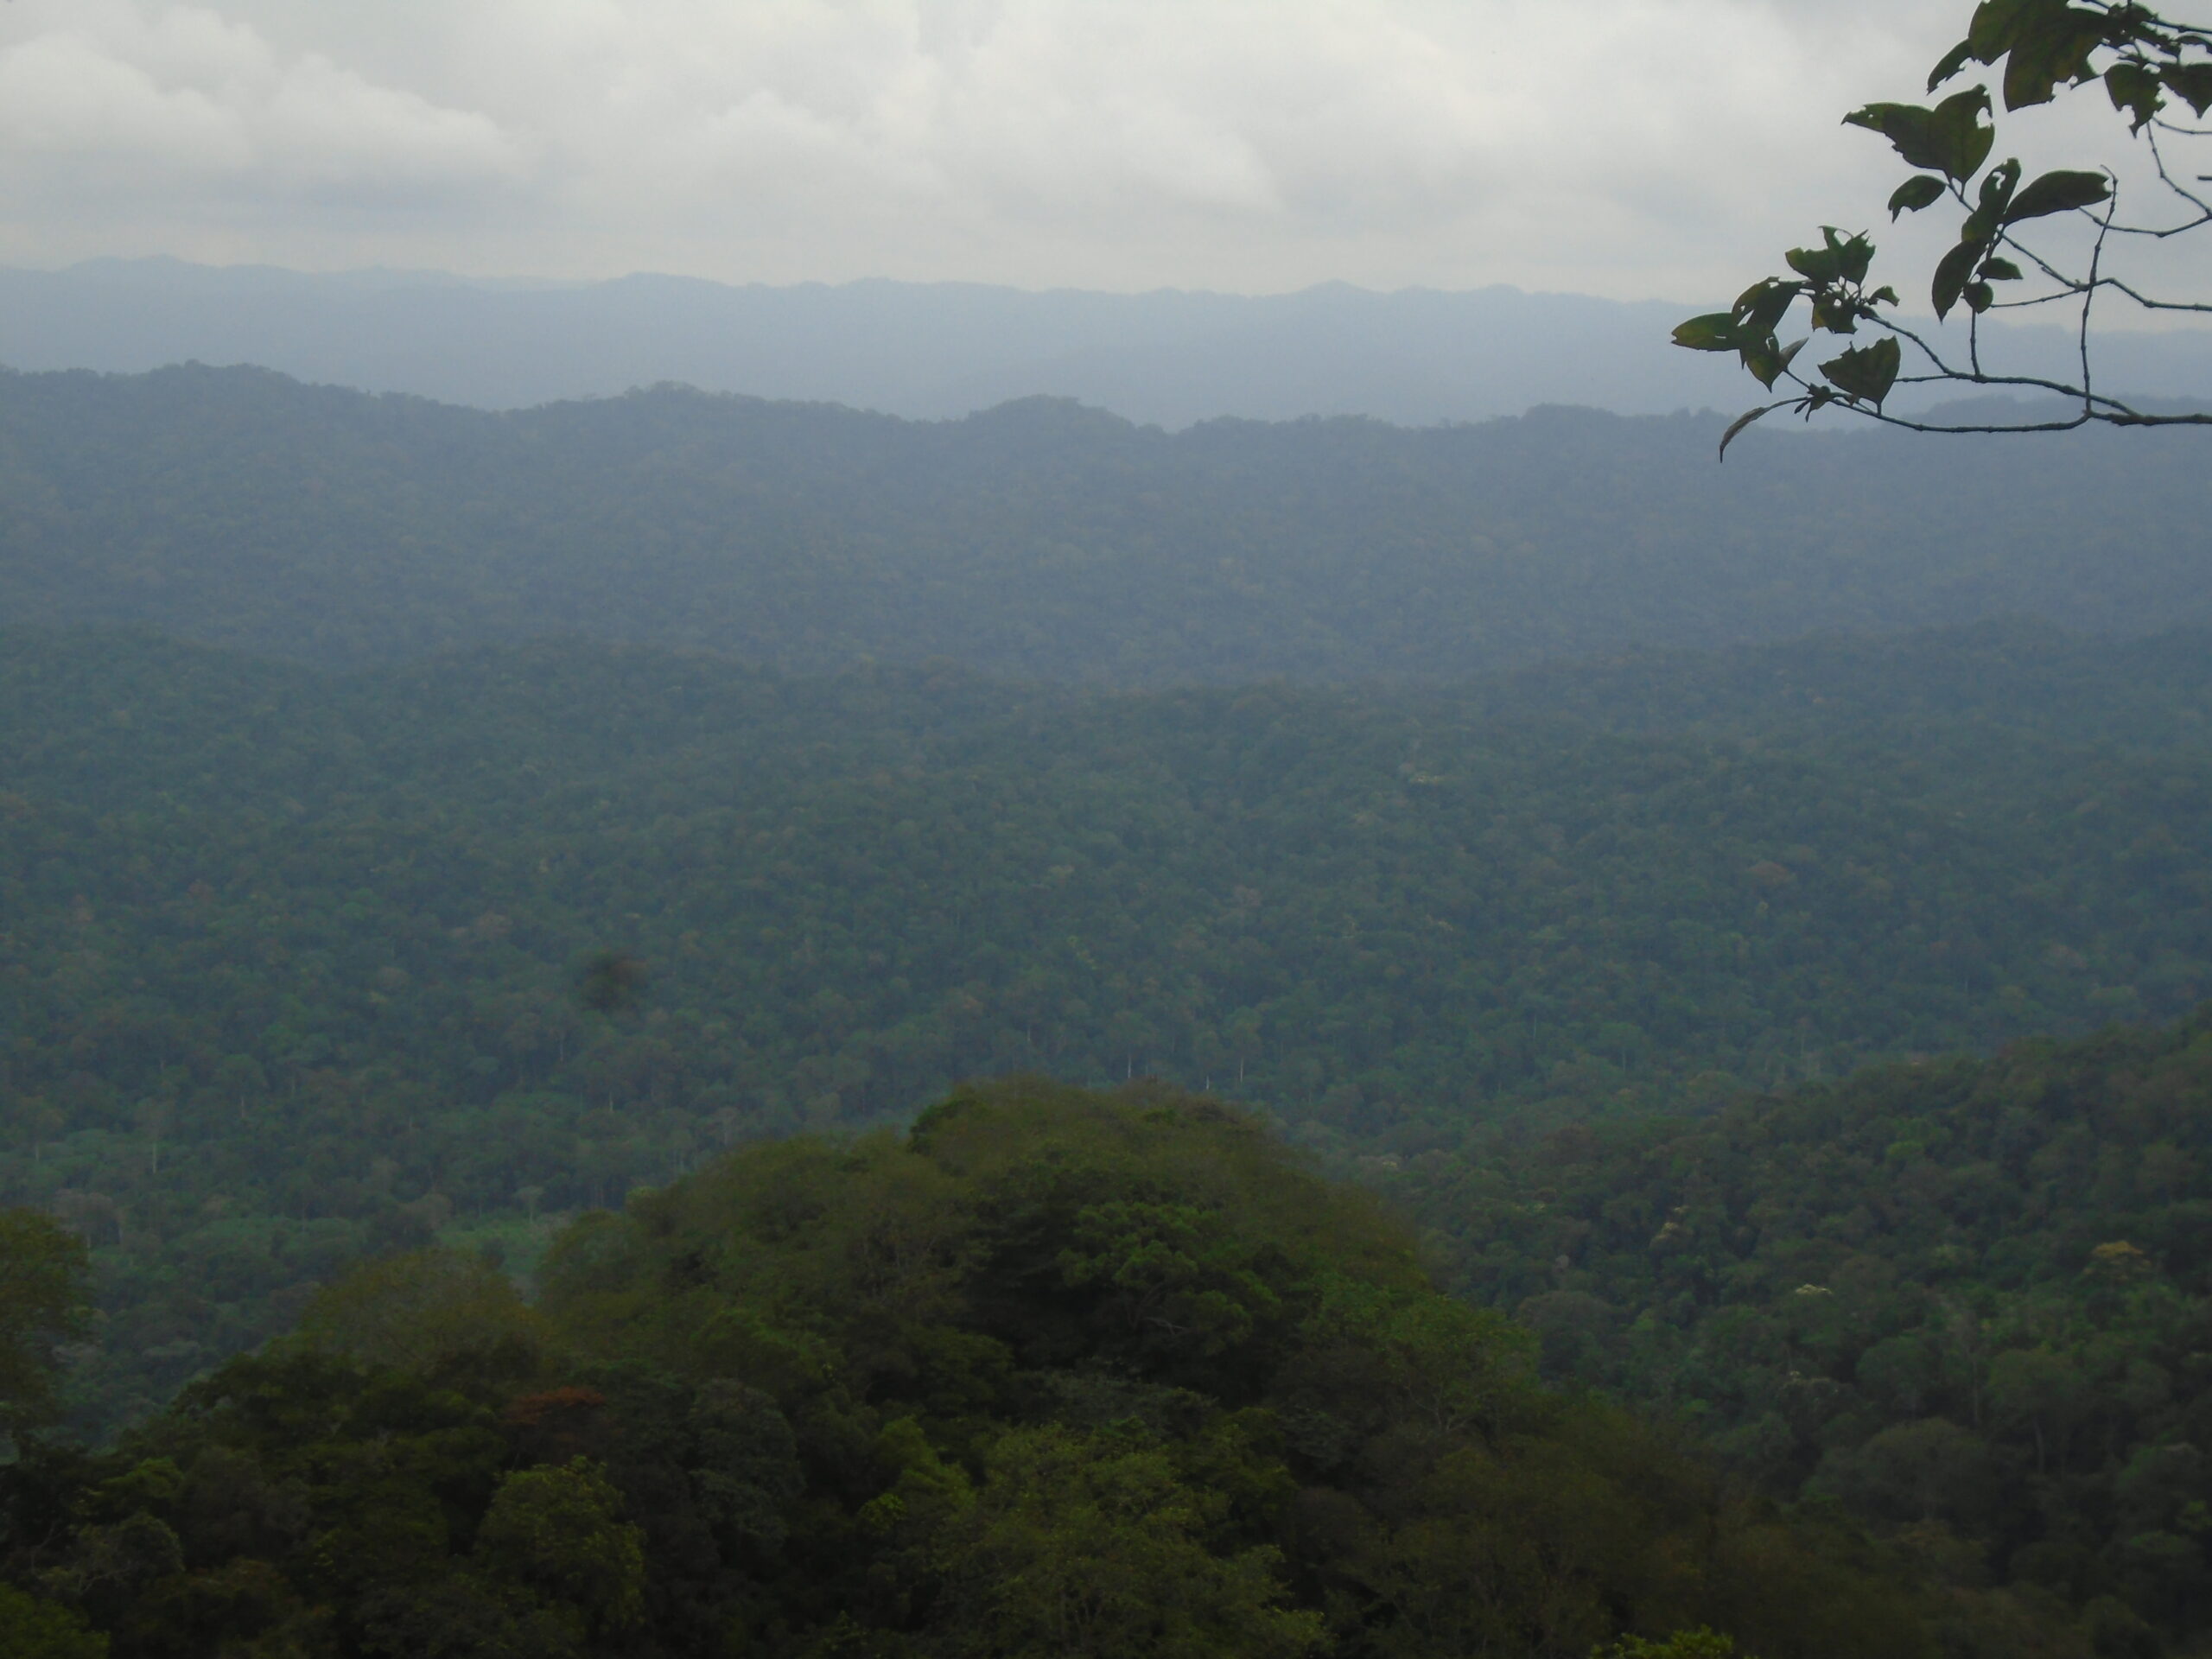 Inventaire écologique au service de la conservation concertée des ressources naturelles de la forêt du Mayombe dans le district de Kakamoeka